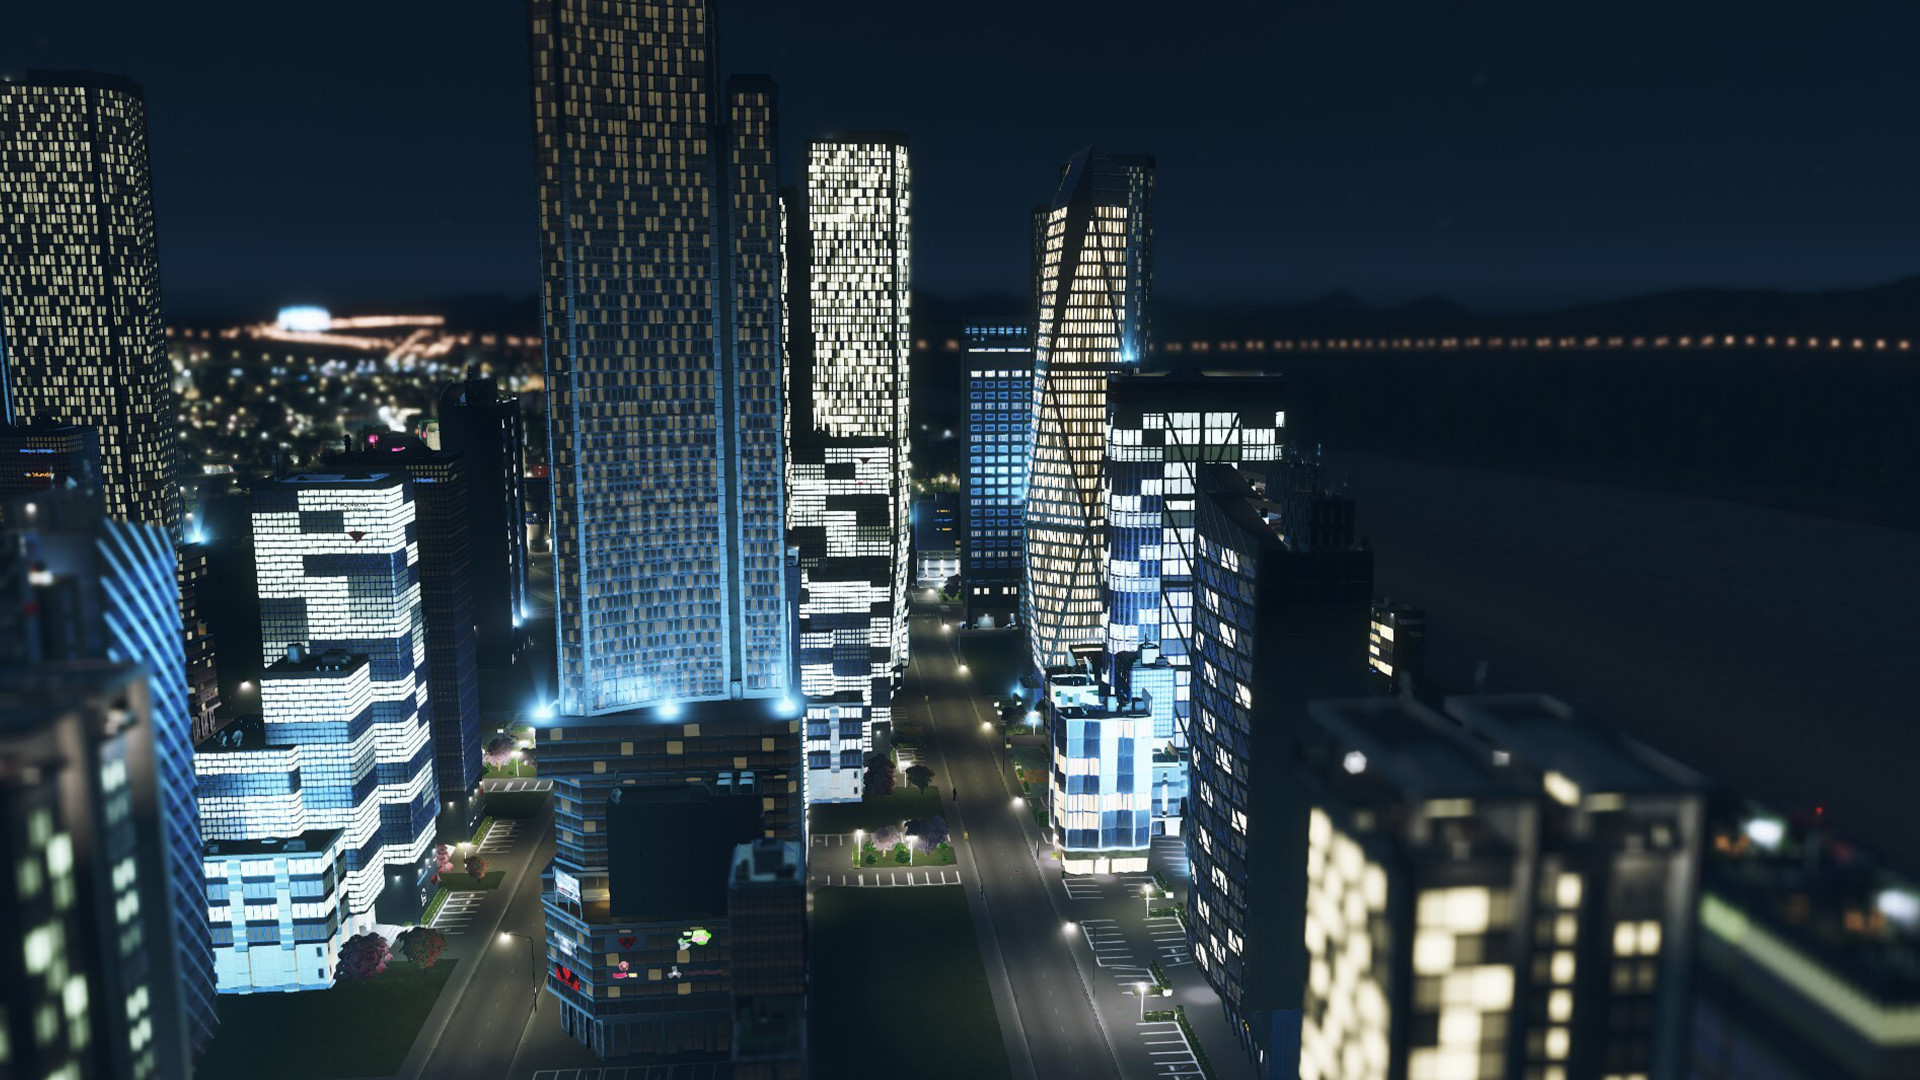 سی دی کی اریجینال استیم بازی Cities: Skylines